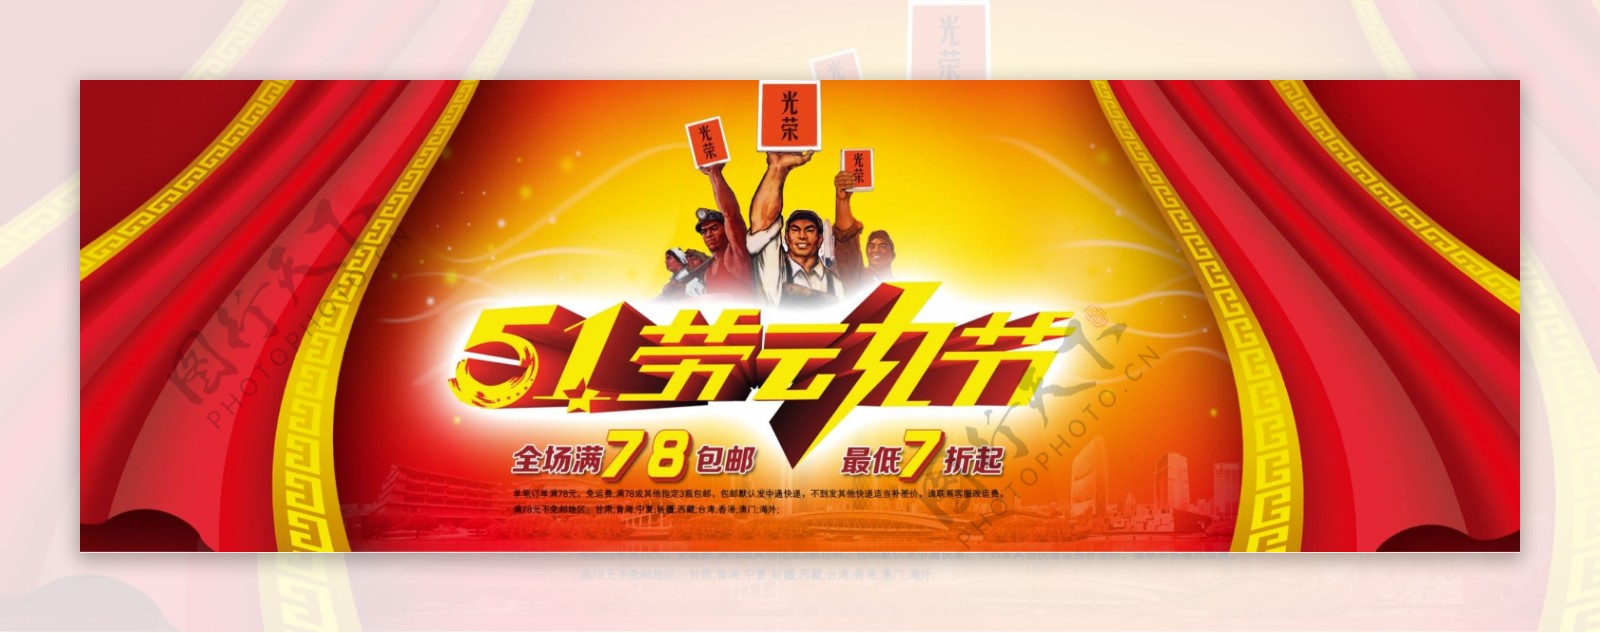 淘宝51劳动节促销轮播广告